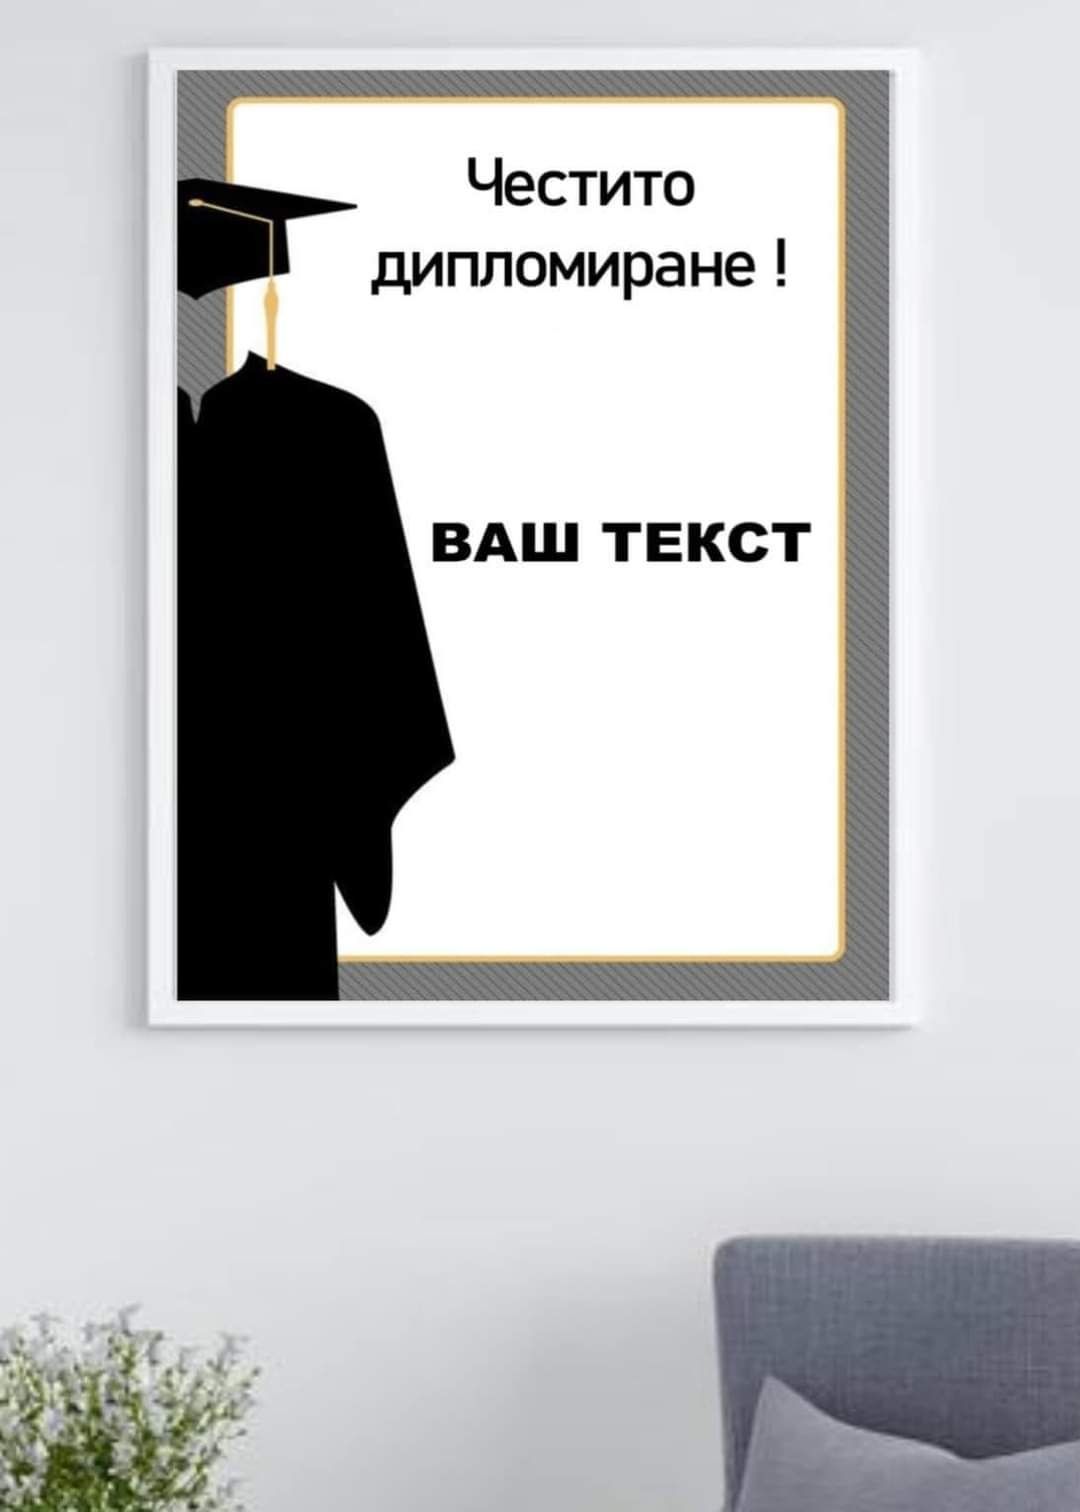 Постер за стена,честито дипломиране